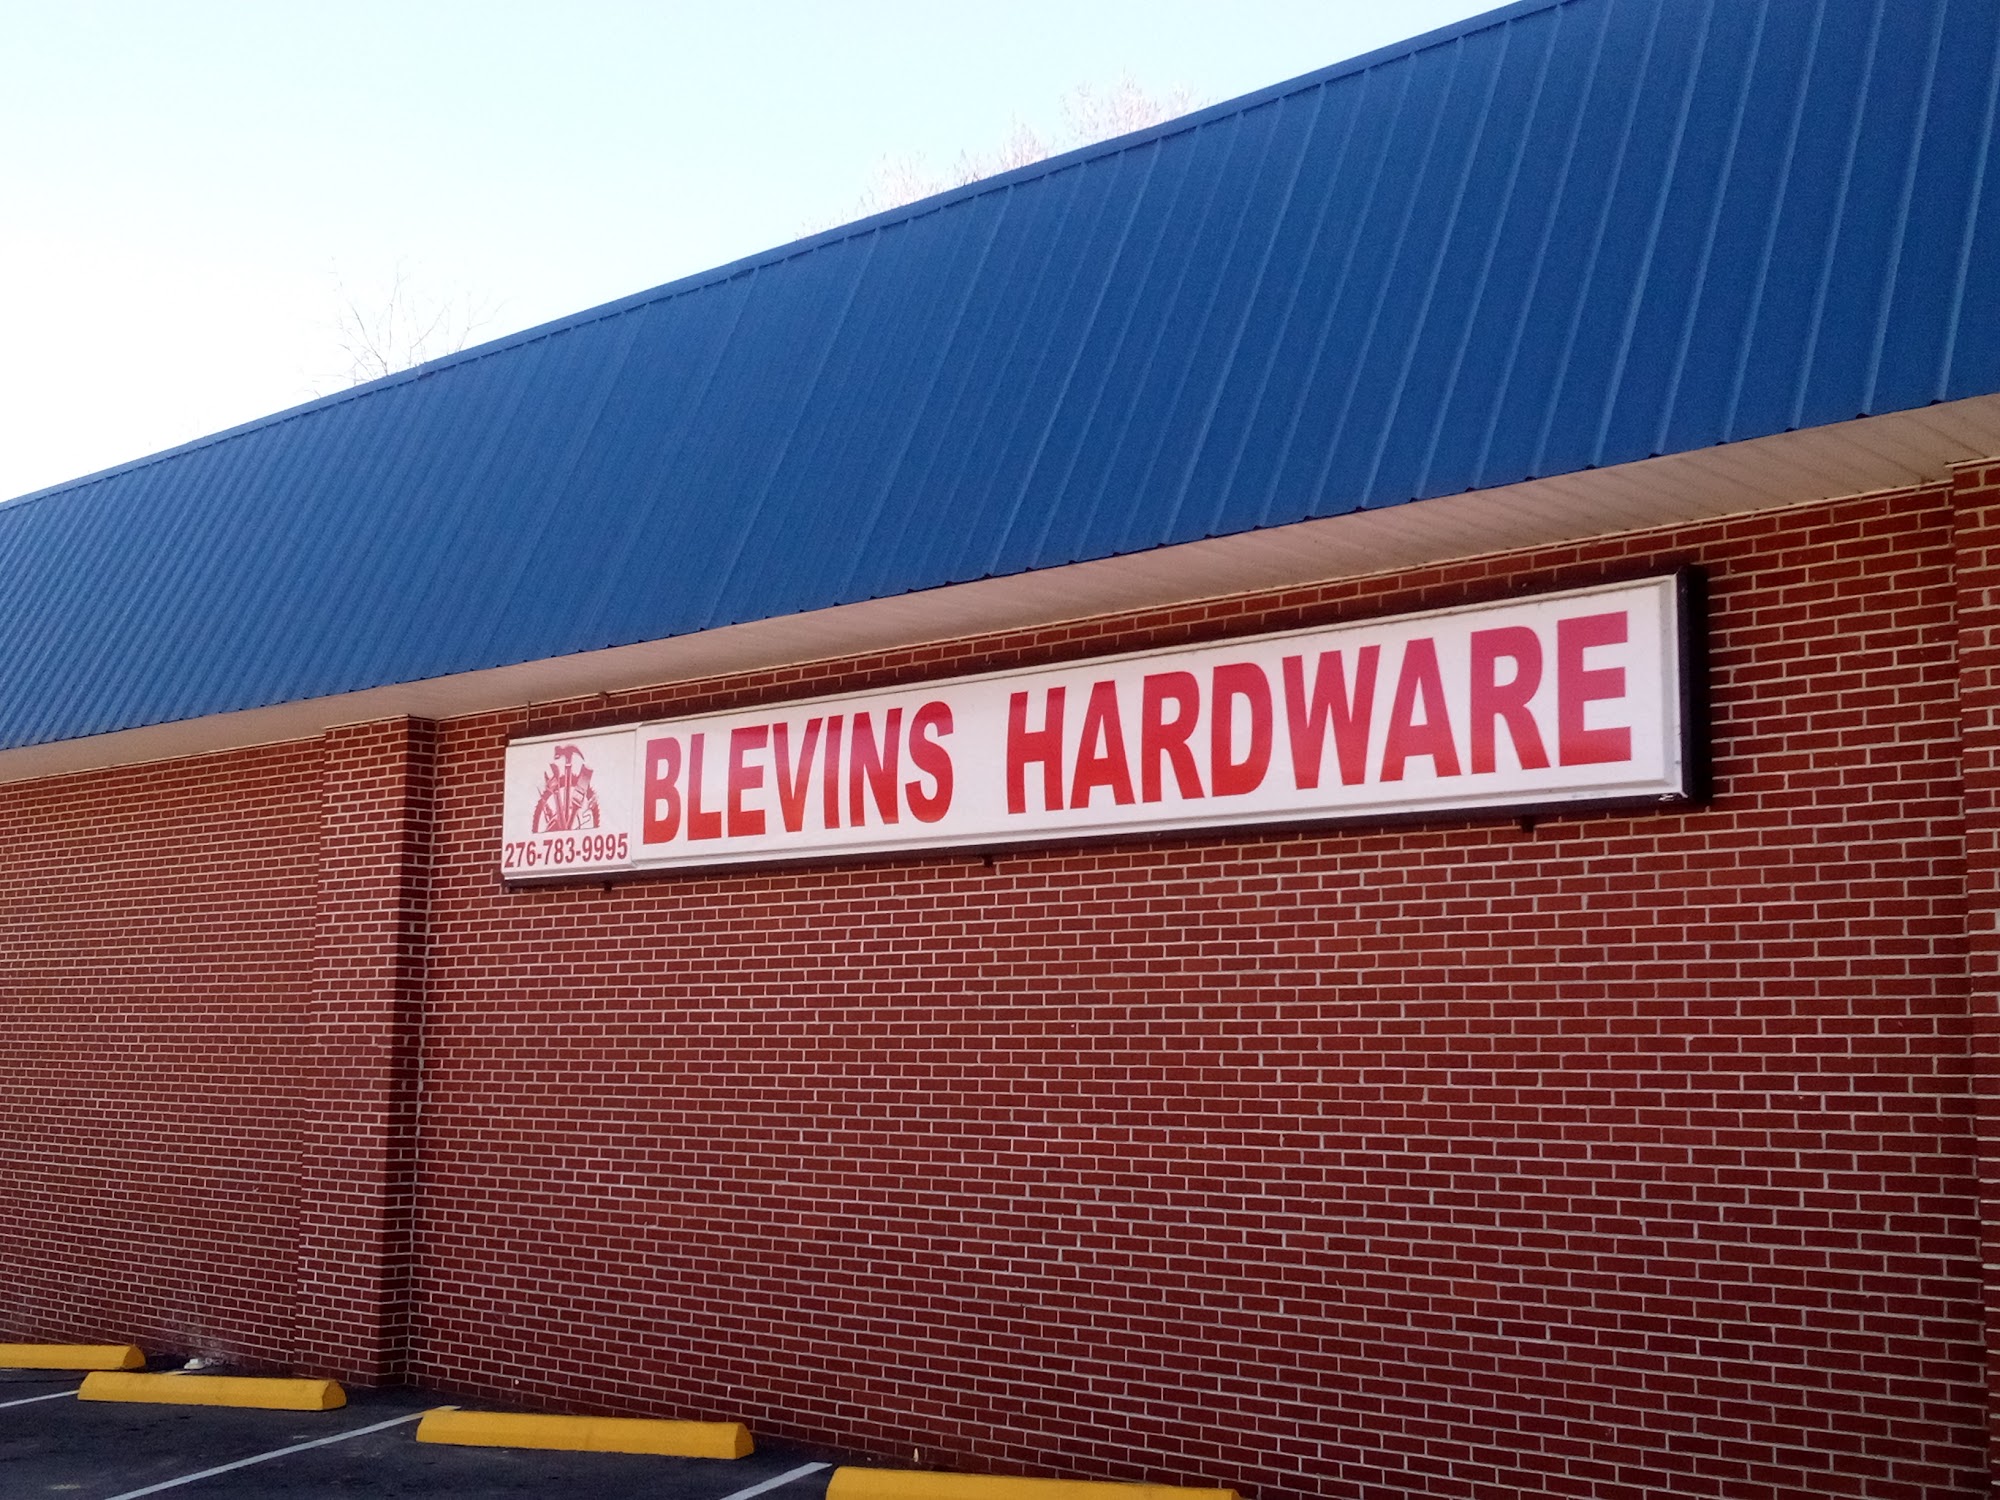 Blevins Hardware